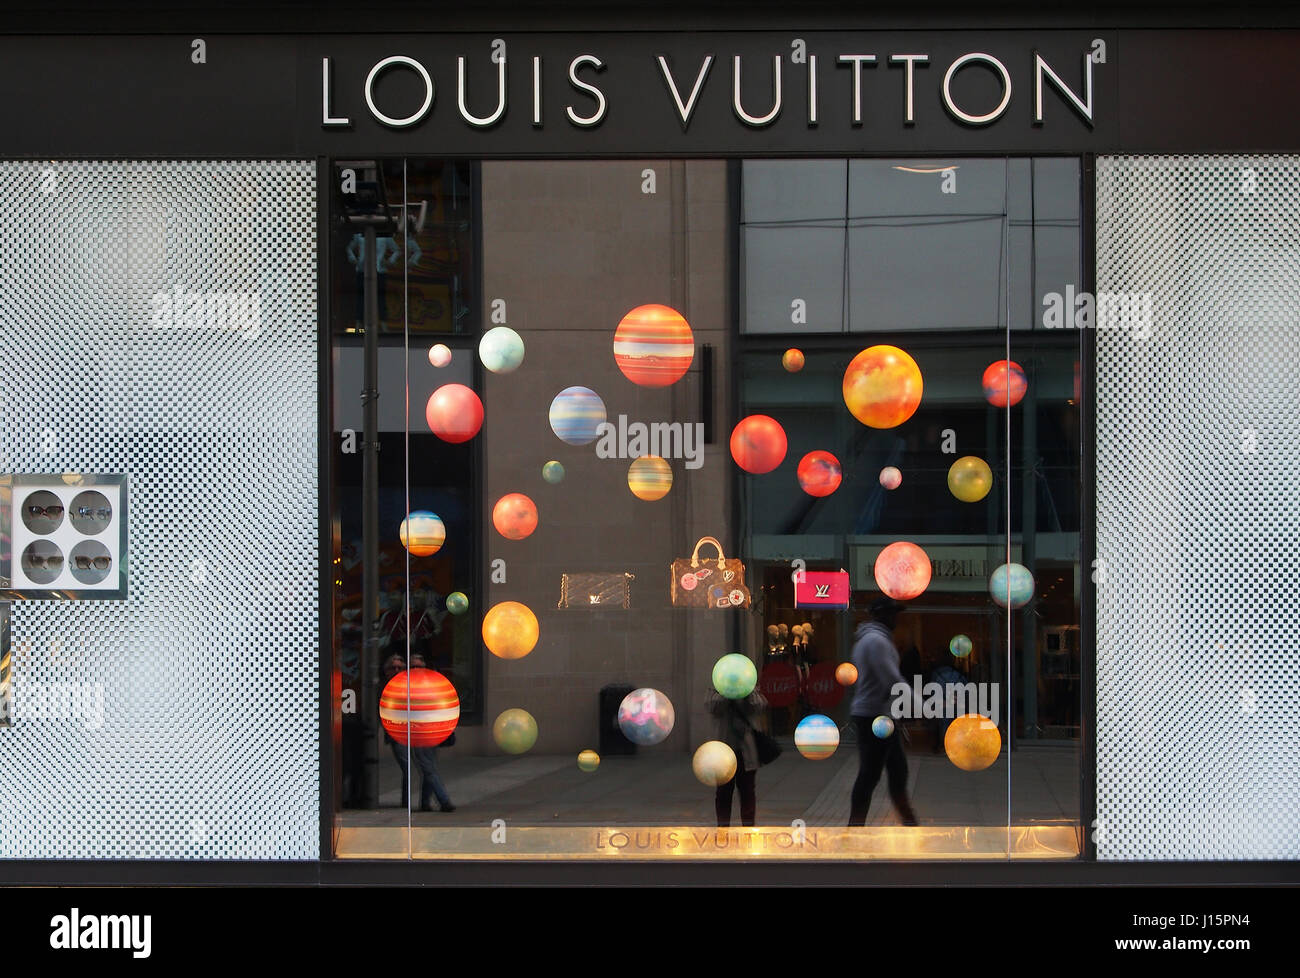 Louis Vuitton Logo Marke Und Text Zeichen Vorderfront Eingang Fassade Home  Shop Luxus Redaktionelles Stockfoto - Bild von mode, zubehör: 243967623